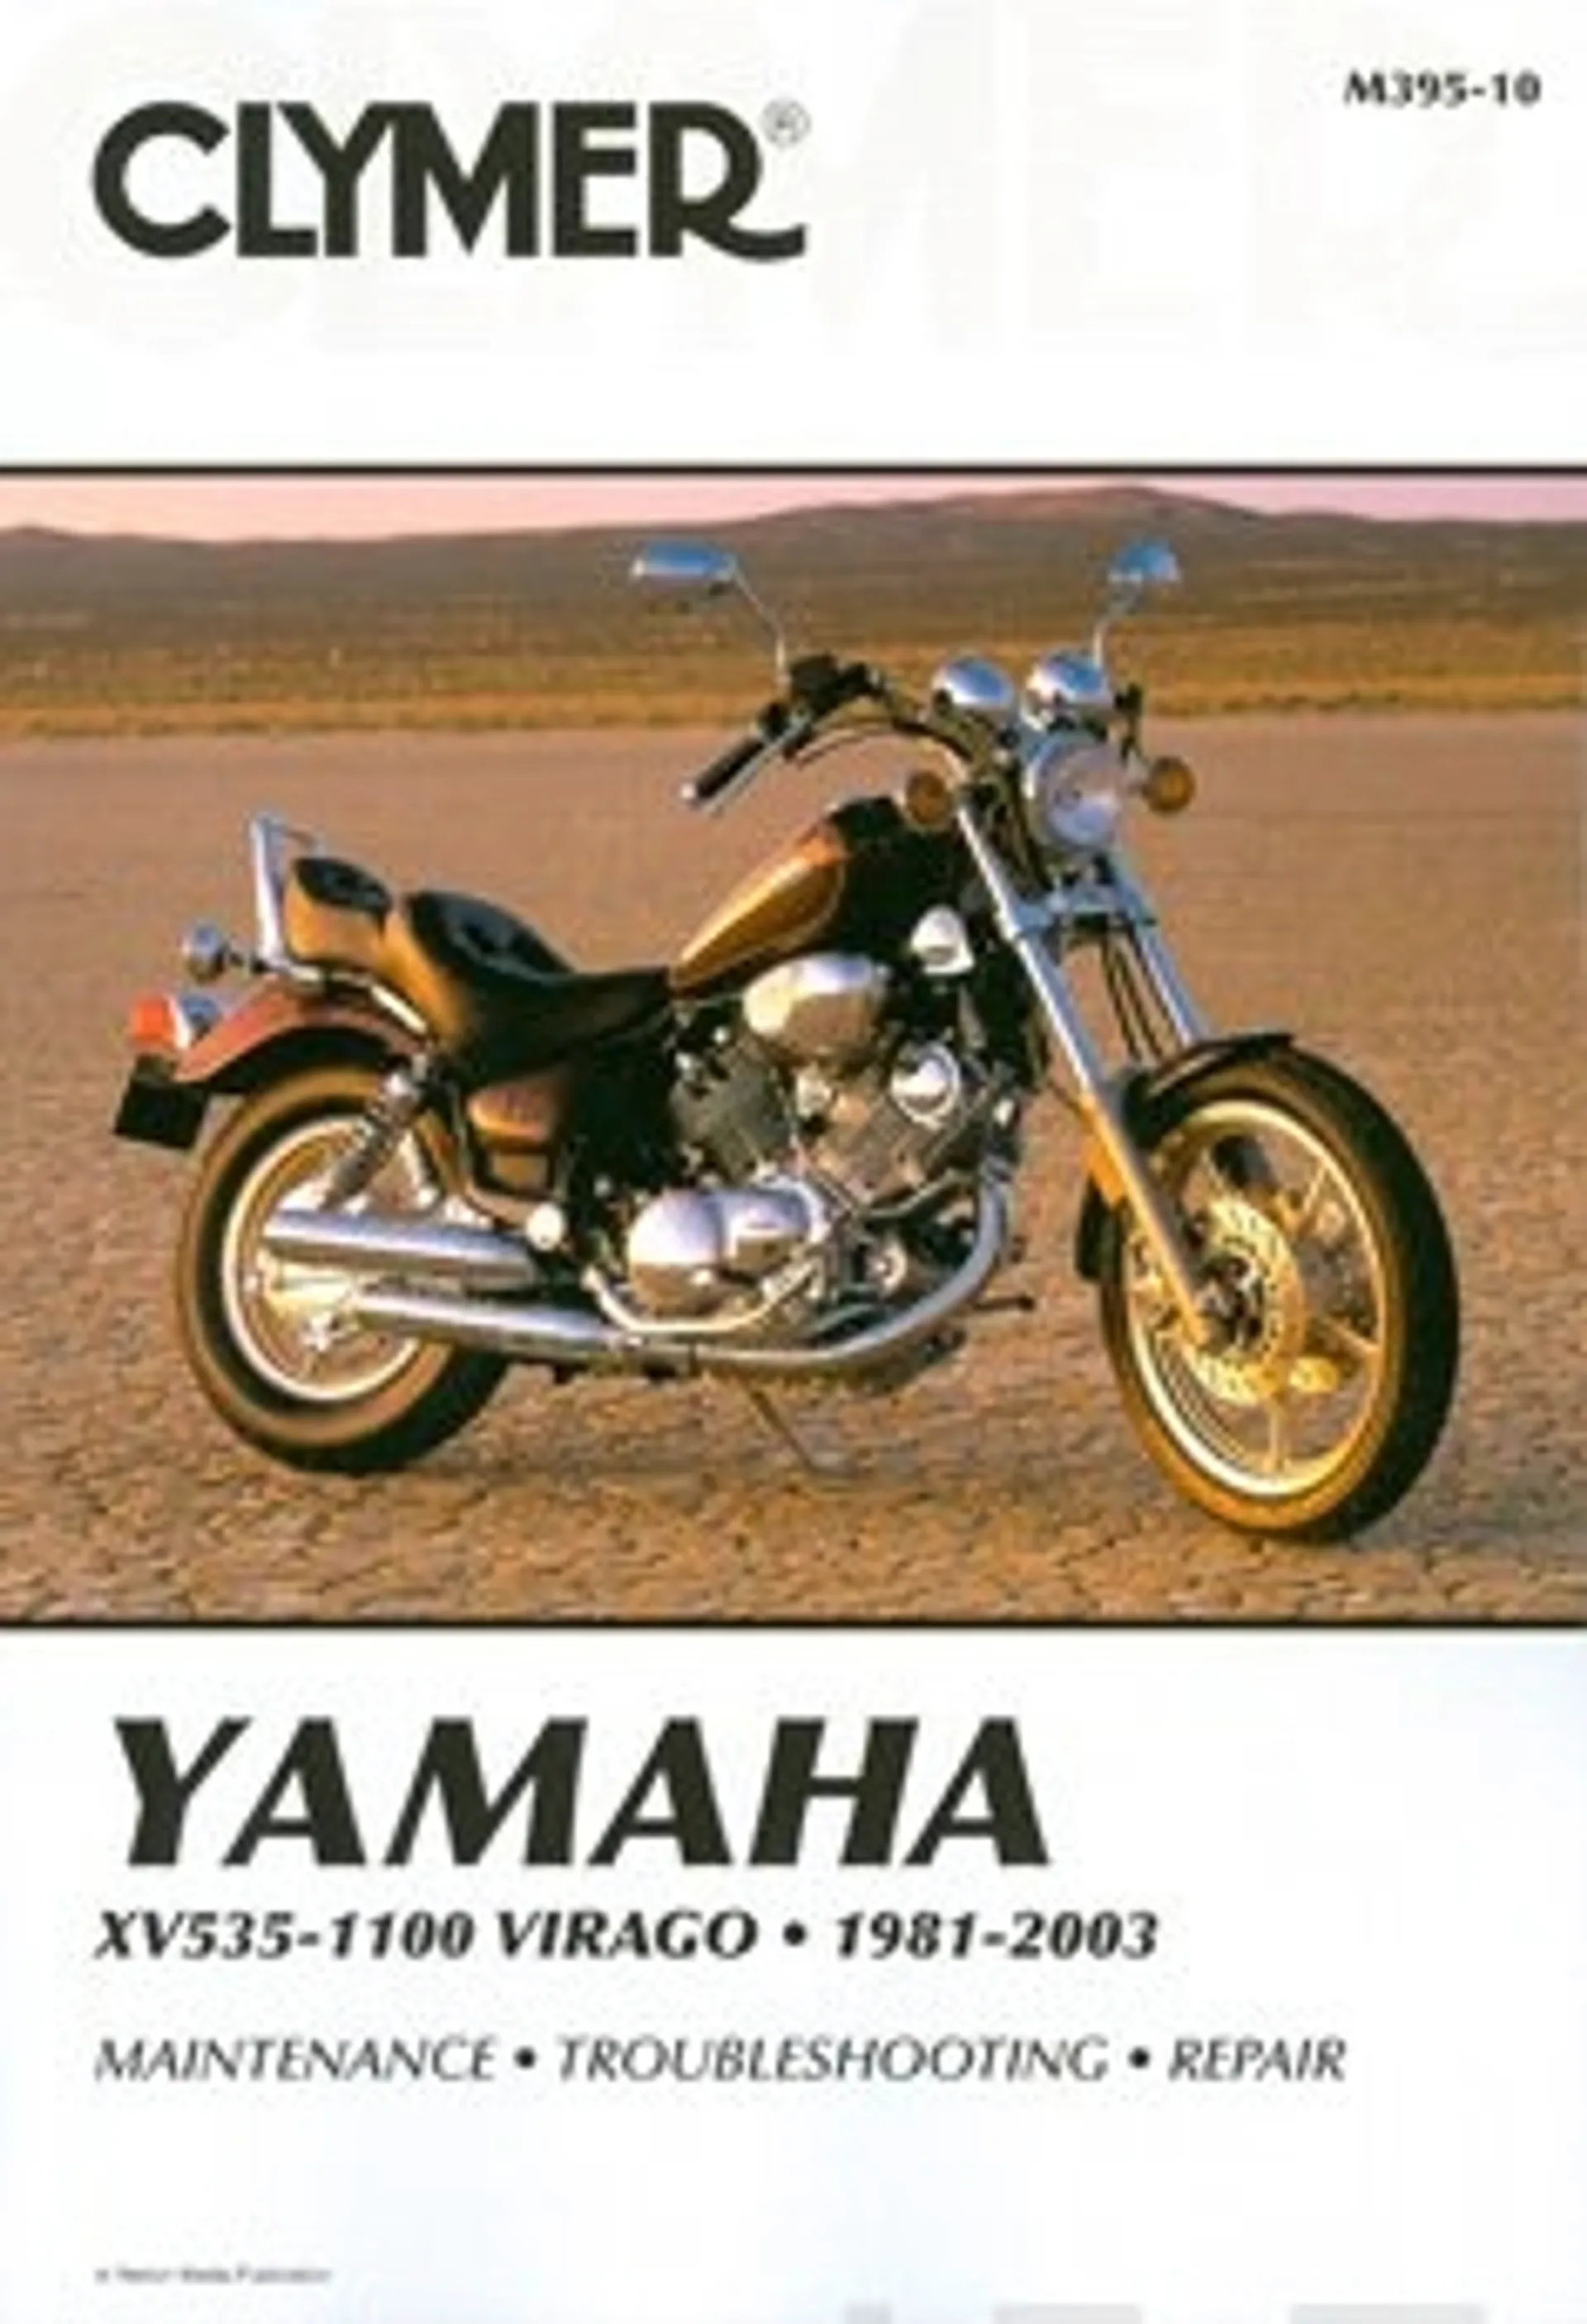 Yamaha XV535-1100 Virago 1981-2003